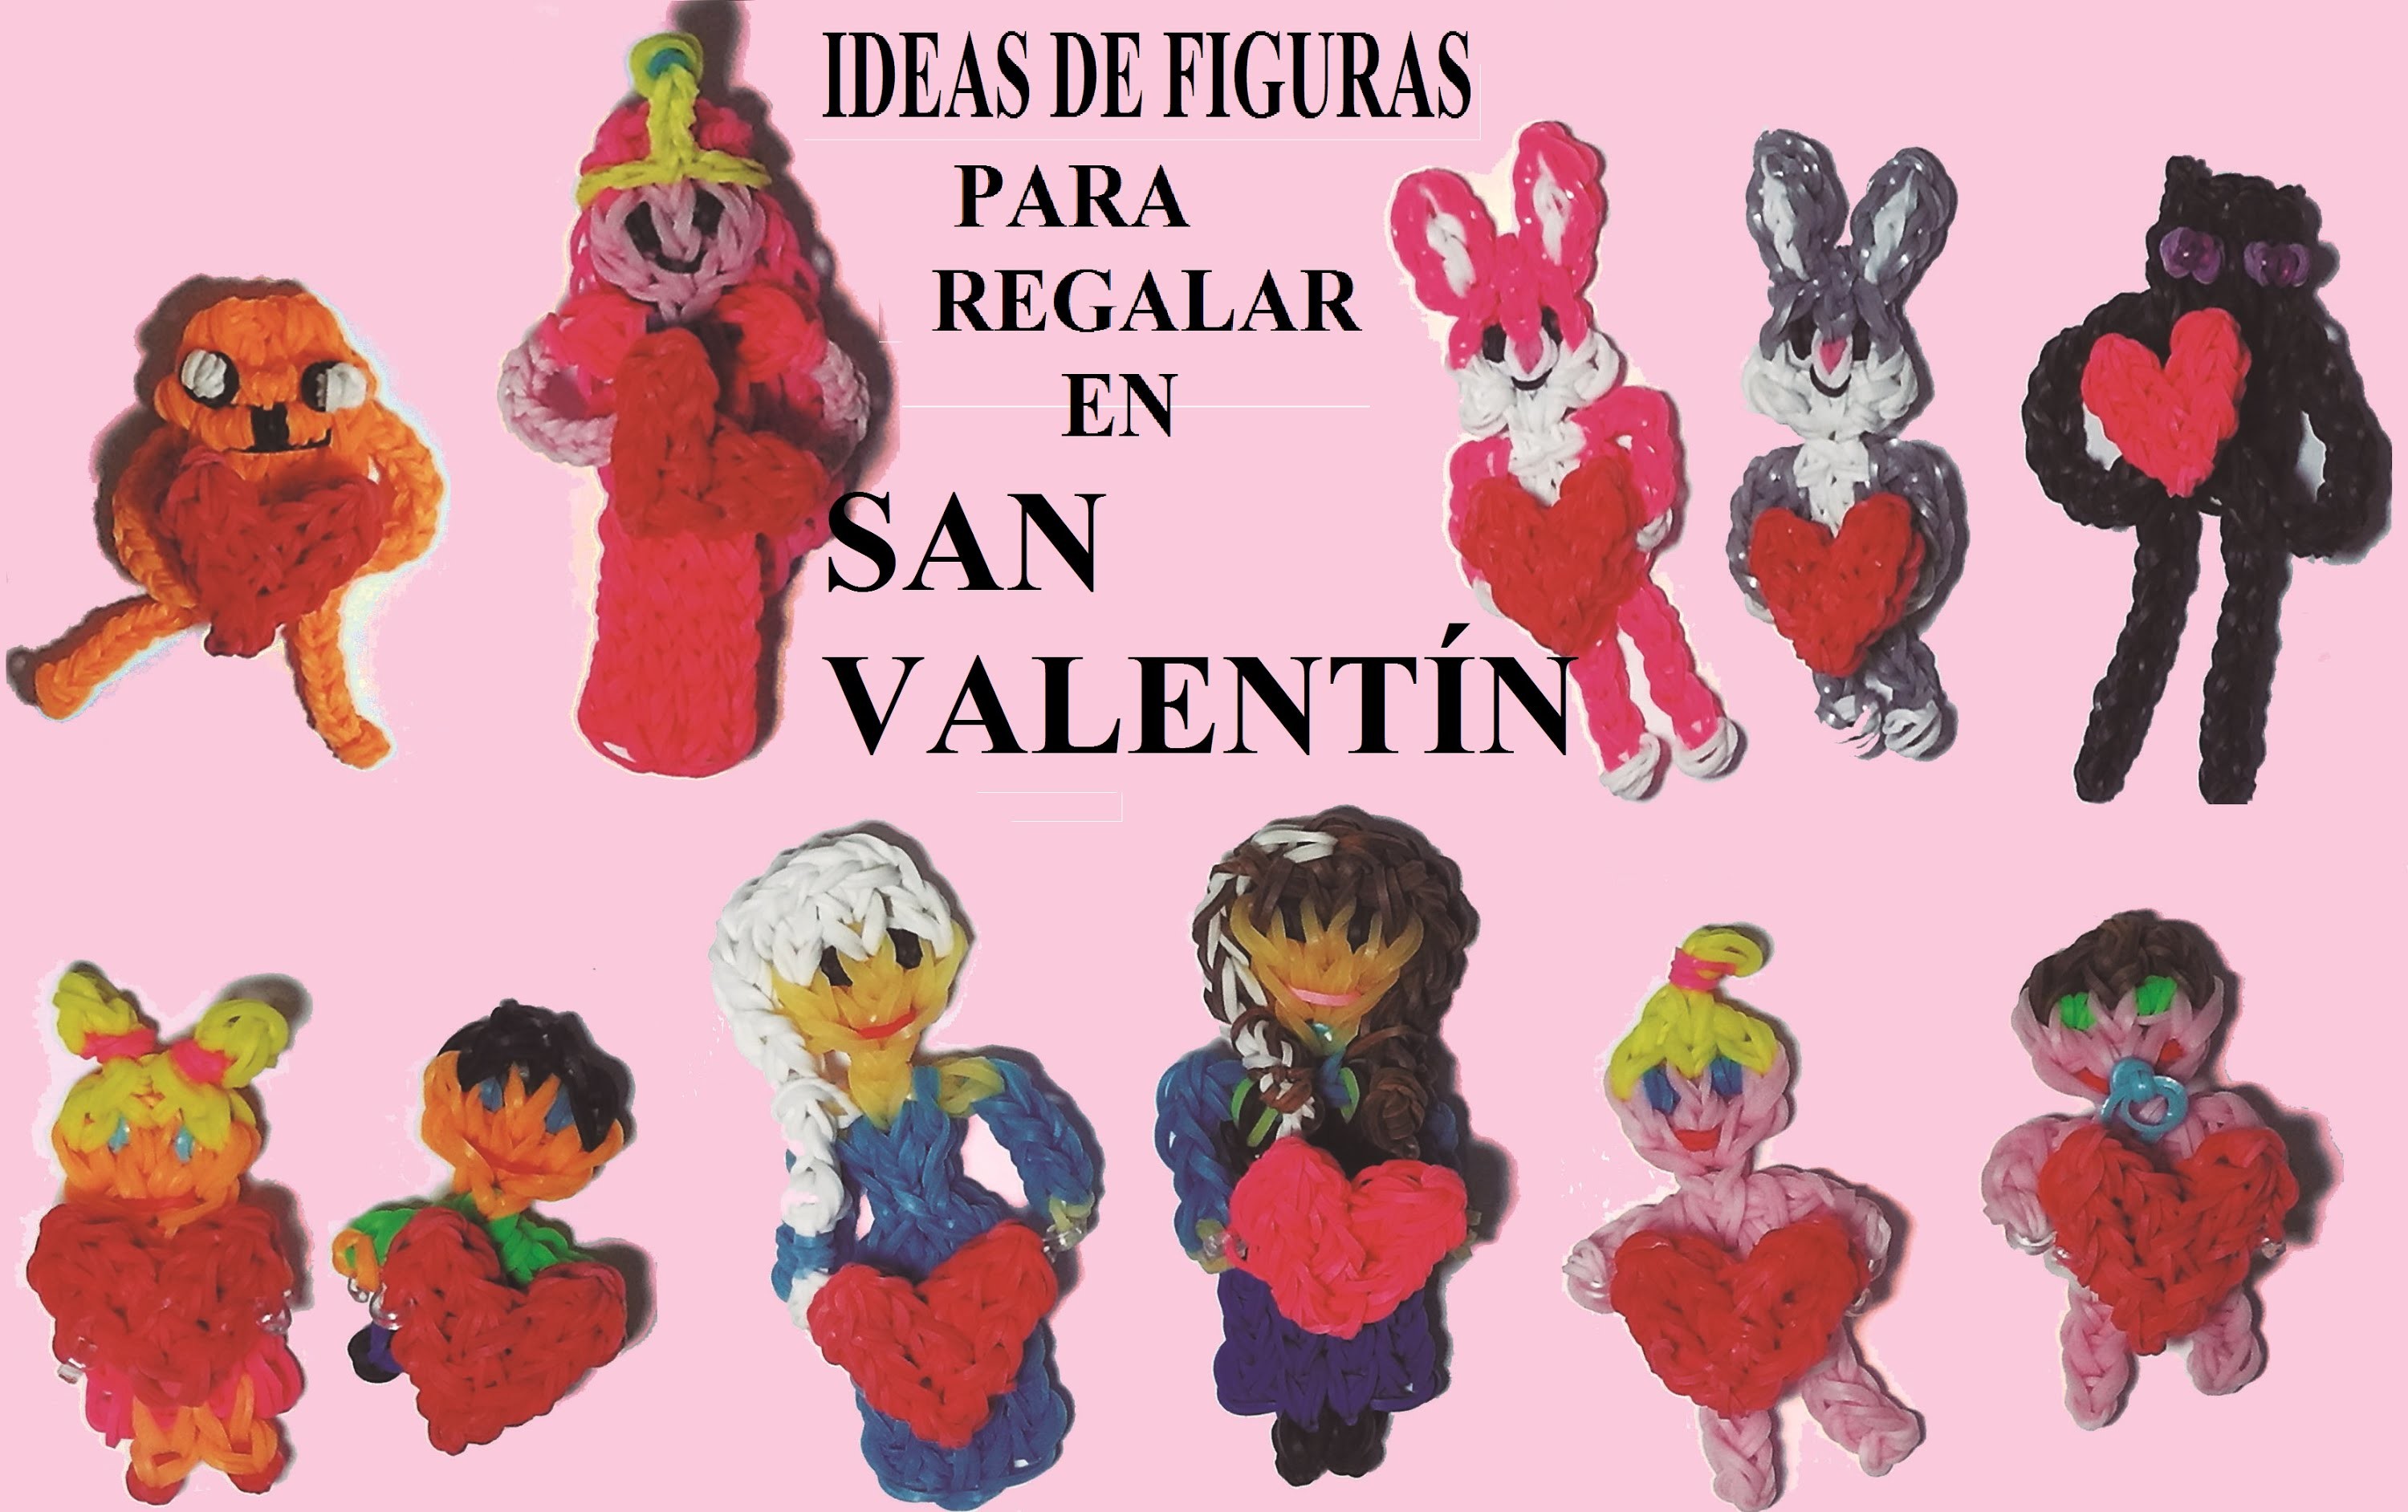 Mis ideas de figuras de gomitas para regalar en San Valentín con un corazón